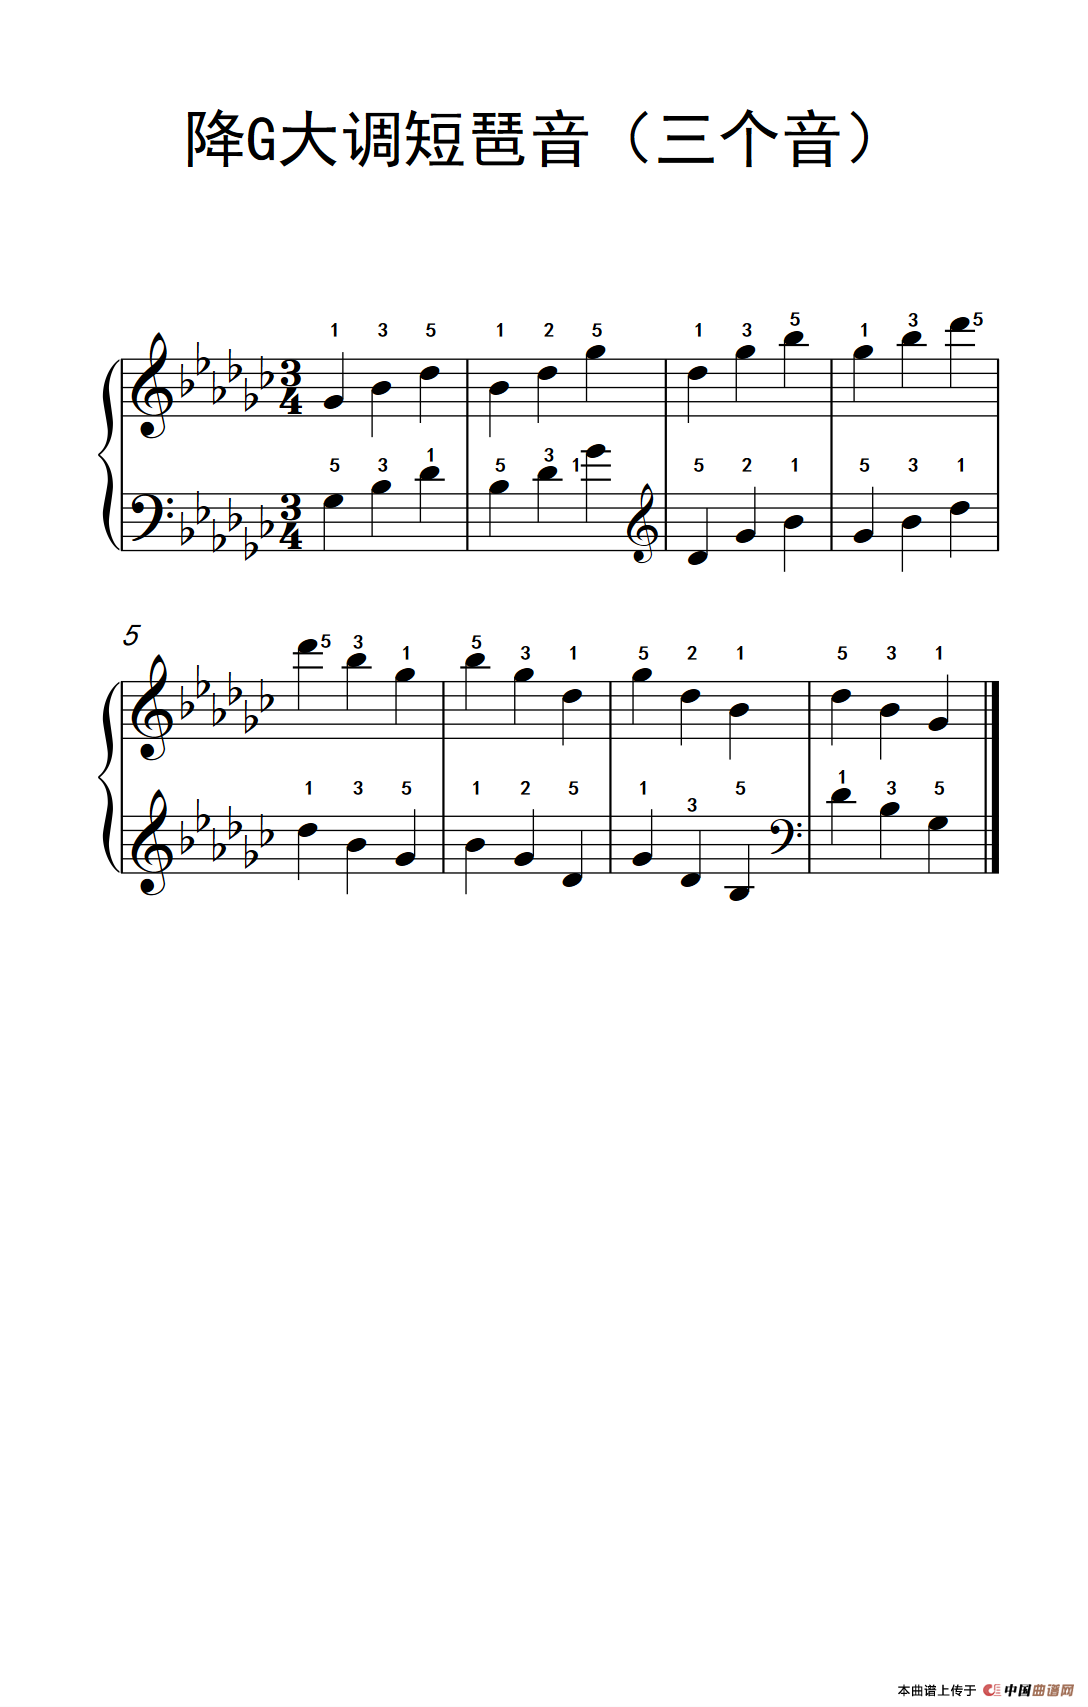 《降G大调短琶音》钢琴曲谱图分享